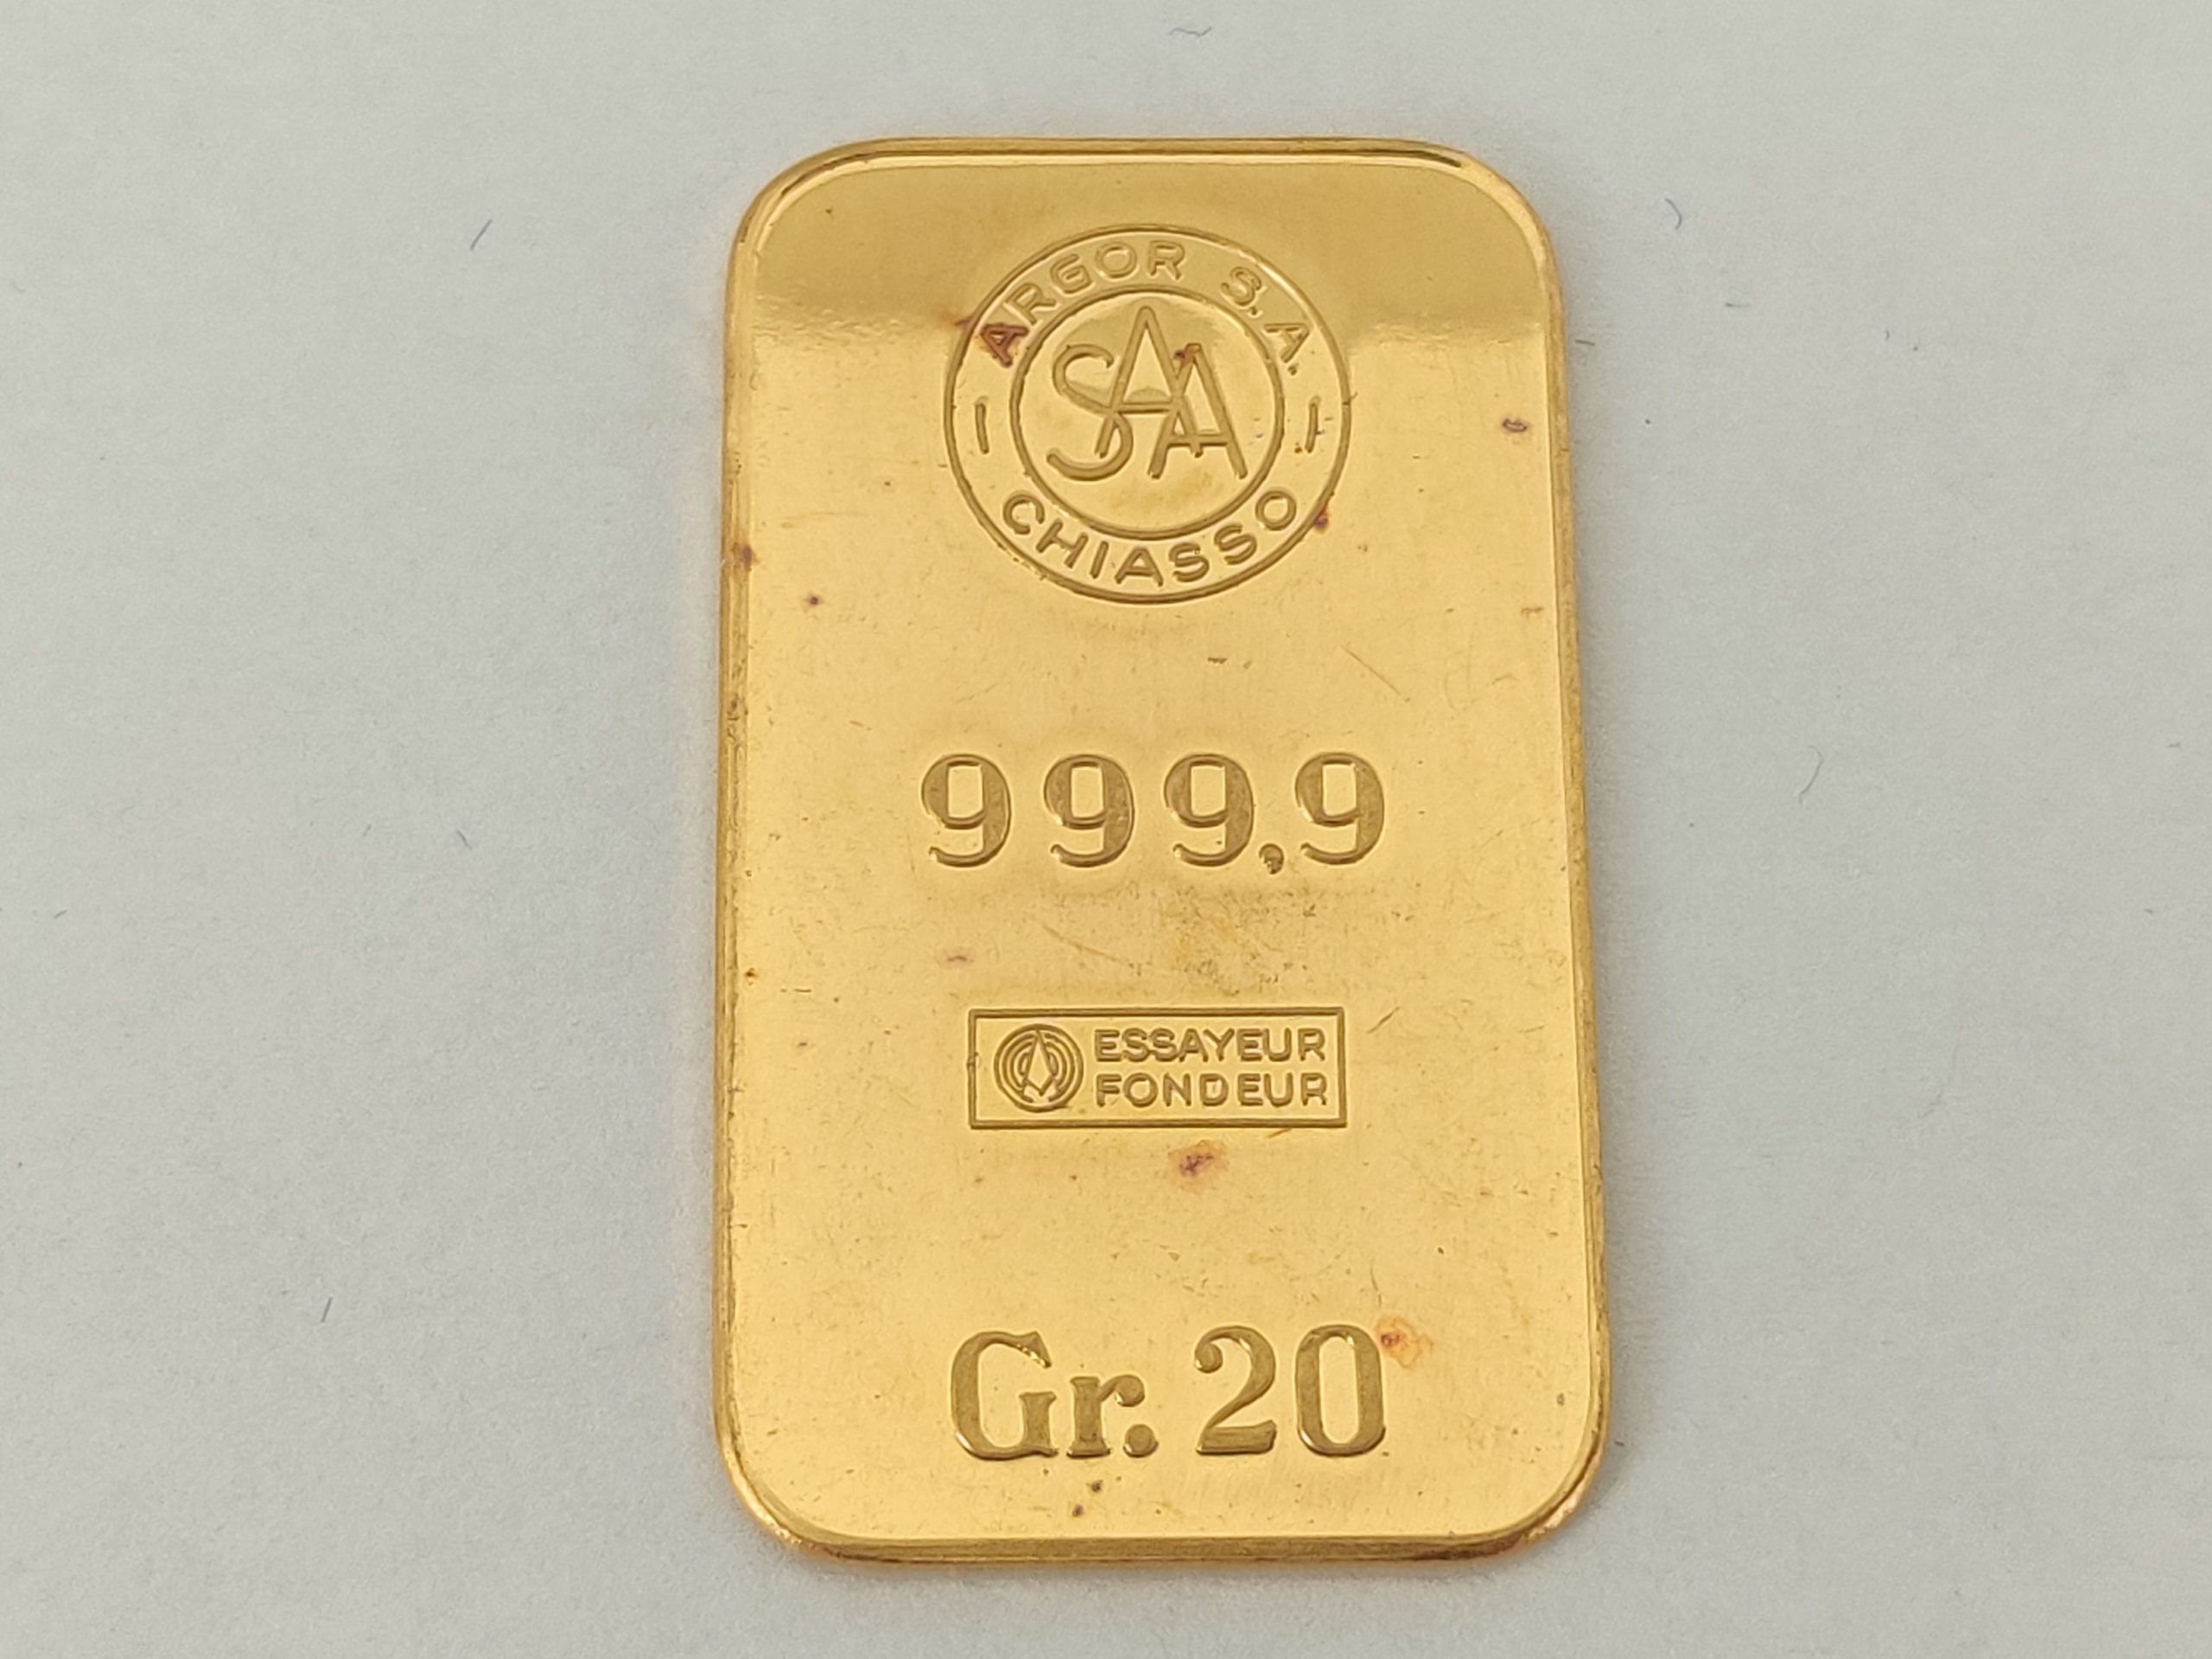 rijkdom Buitenshuis uitdrukken 20 gram goudbaar kopen. Makkelijk en snel te bestellen in webshop